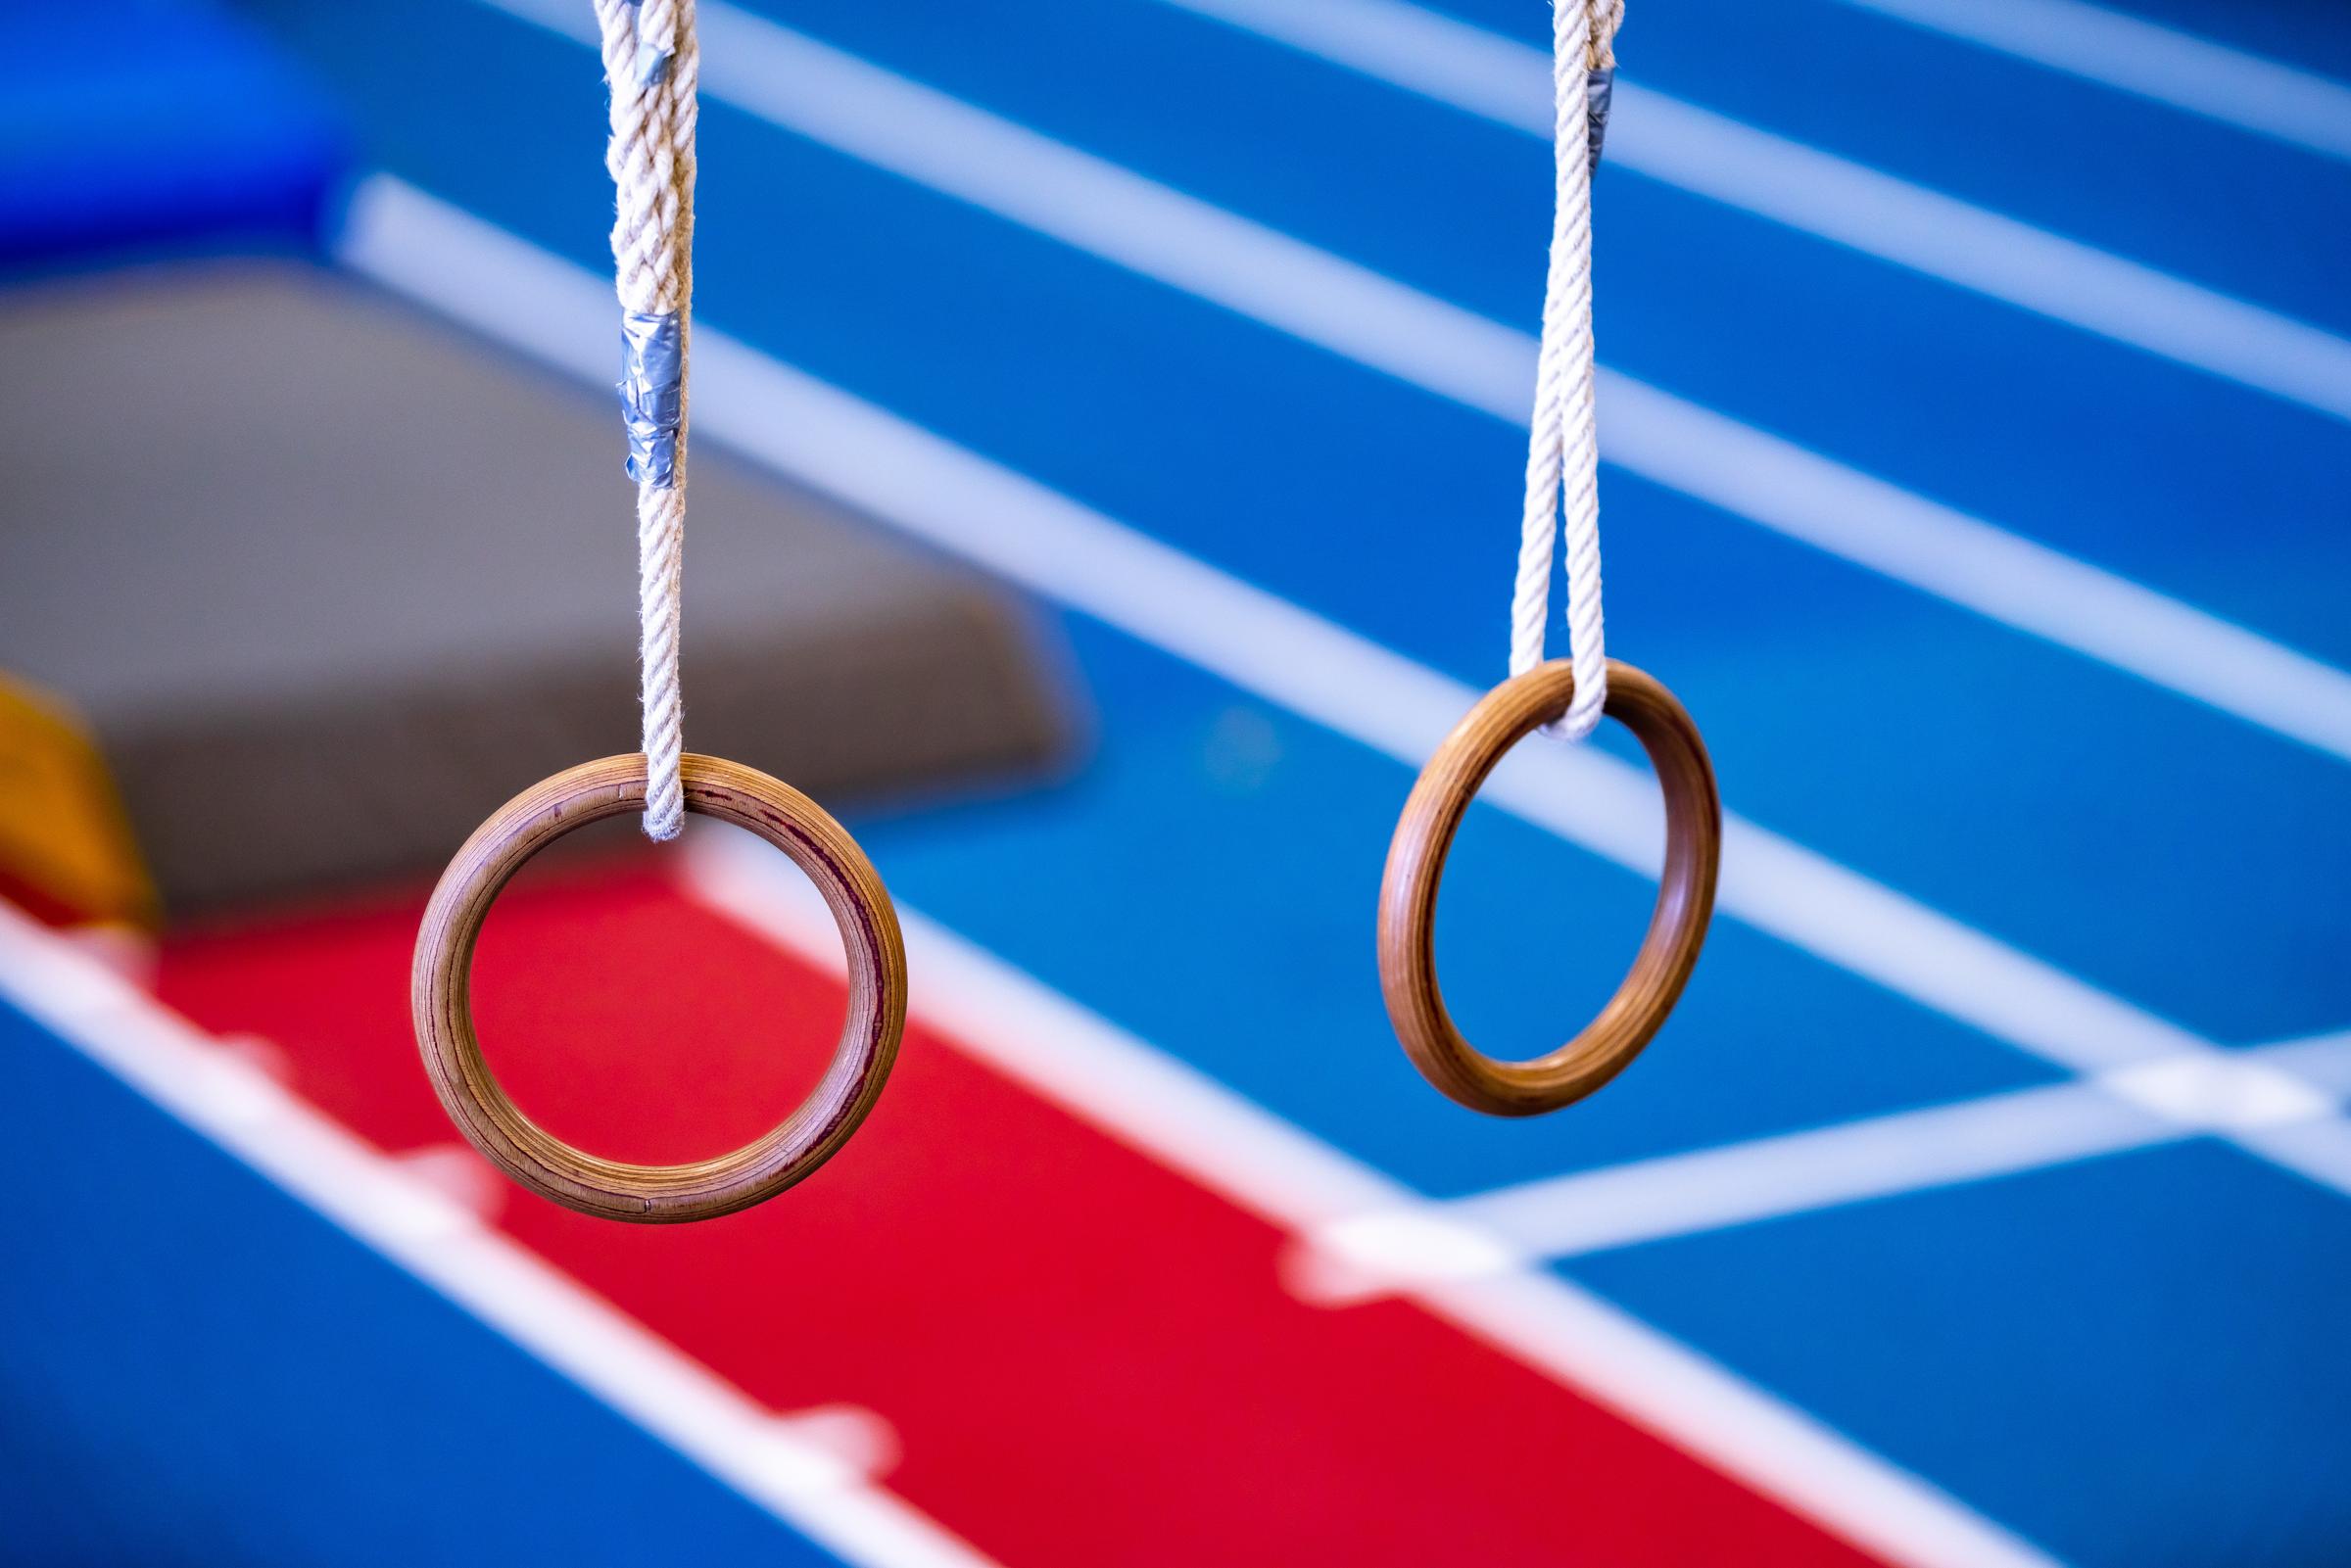 Zwei Ringe zum Turnen in einer Sporthalle (Foto: Jakob Studnar)